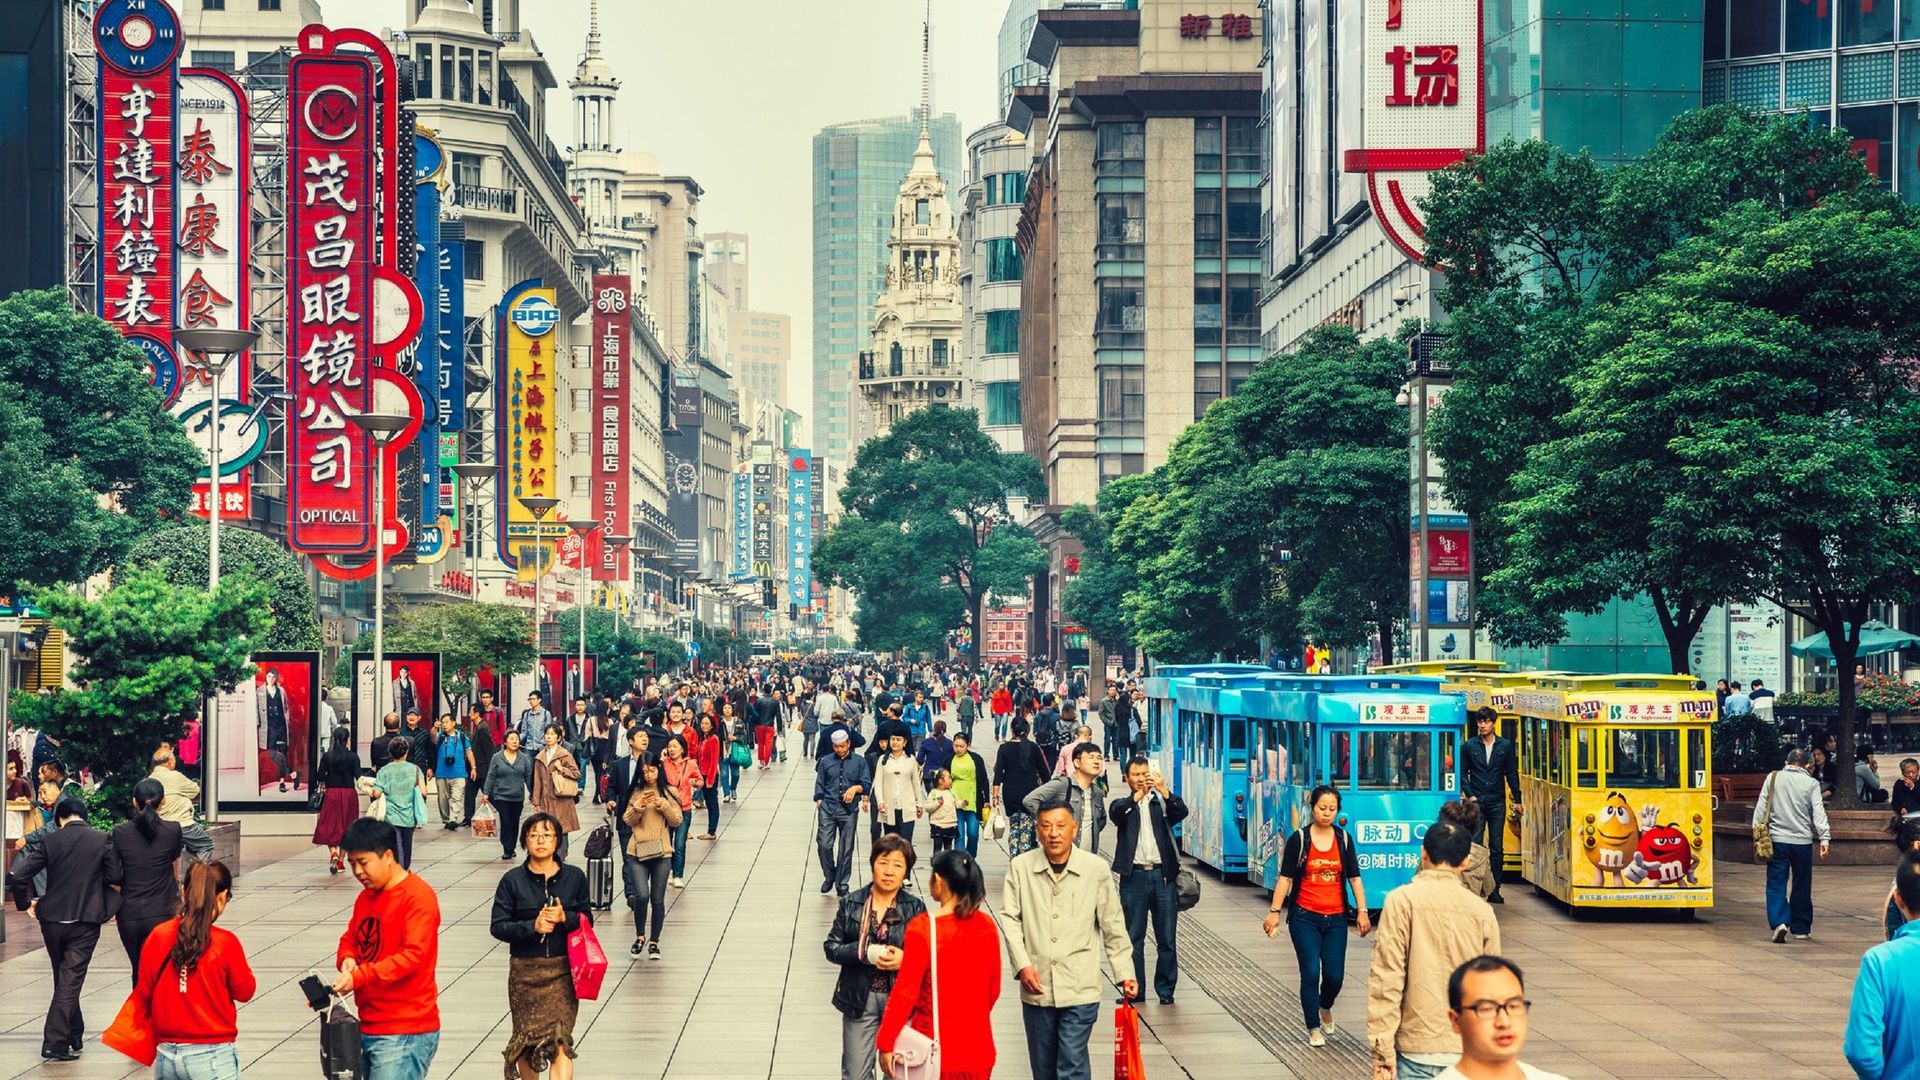 Nanjing Road à Shanghai (Chine) est une immense rue commerciale que les piétons ont progressivement investis, année après année.